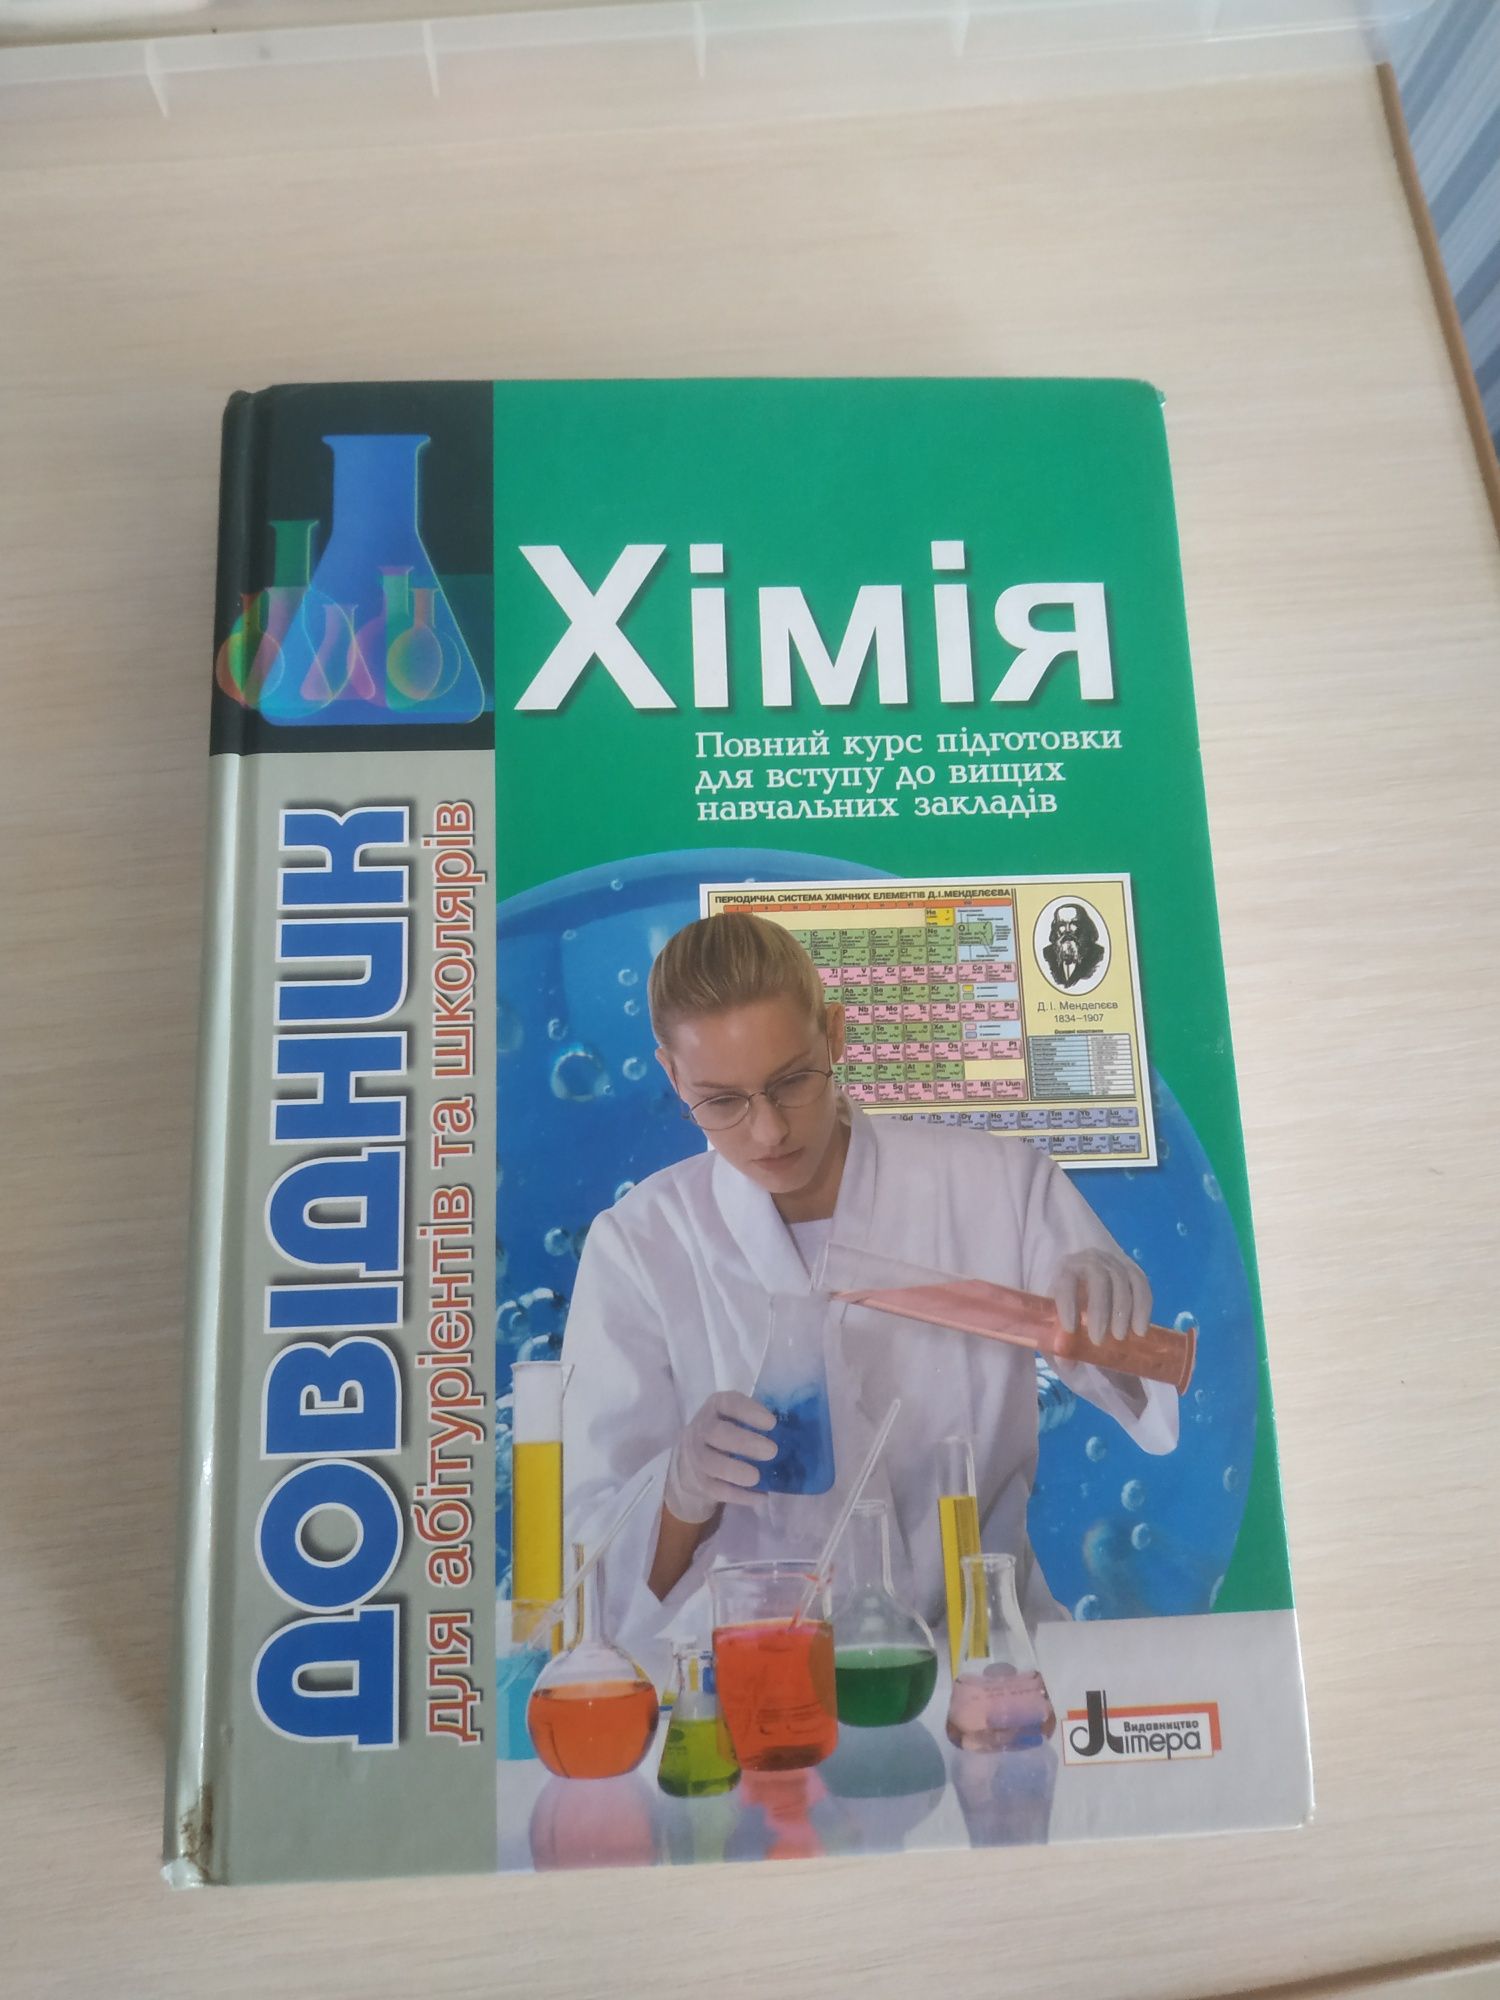 Книга по химии, обширный материал для шк/аб/студ